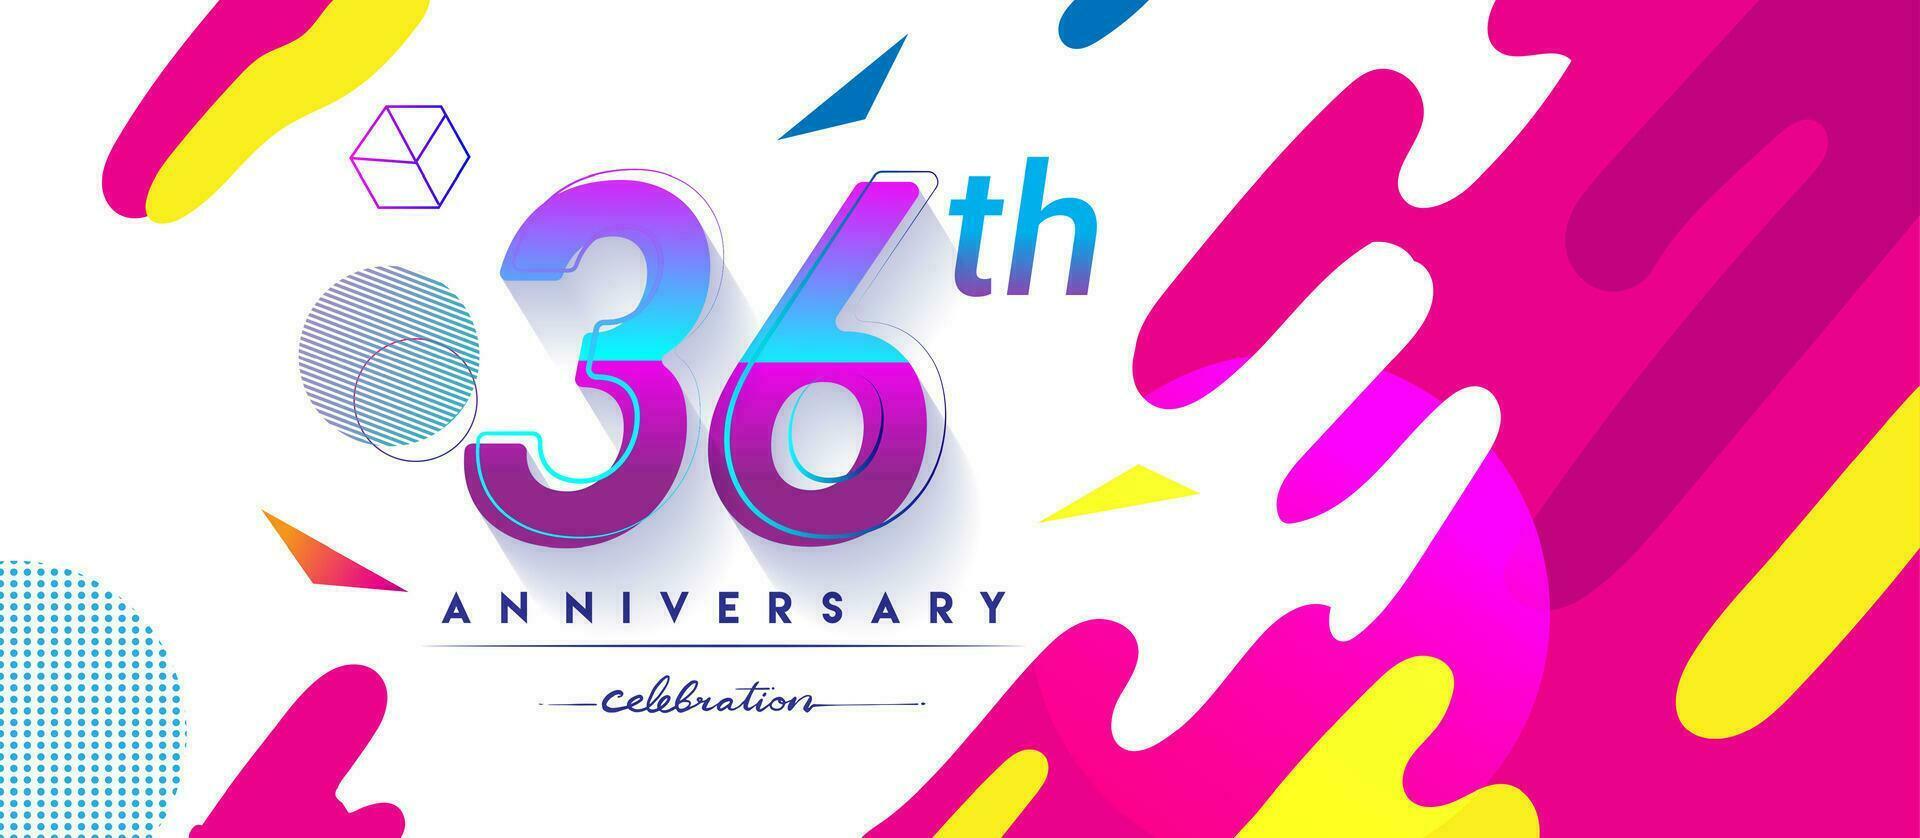 36: e år årsdag logotyp, vektor design födelsedag firande med färgrik geometrisk bakgrund och cirklar form.